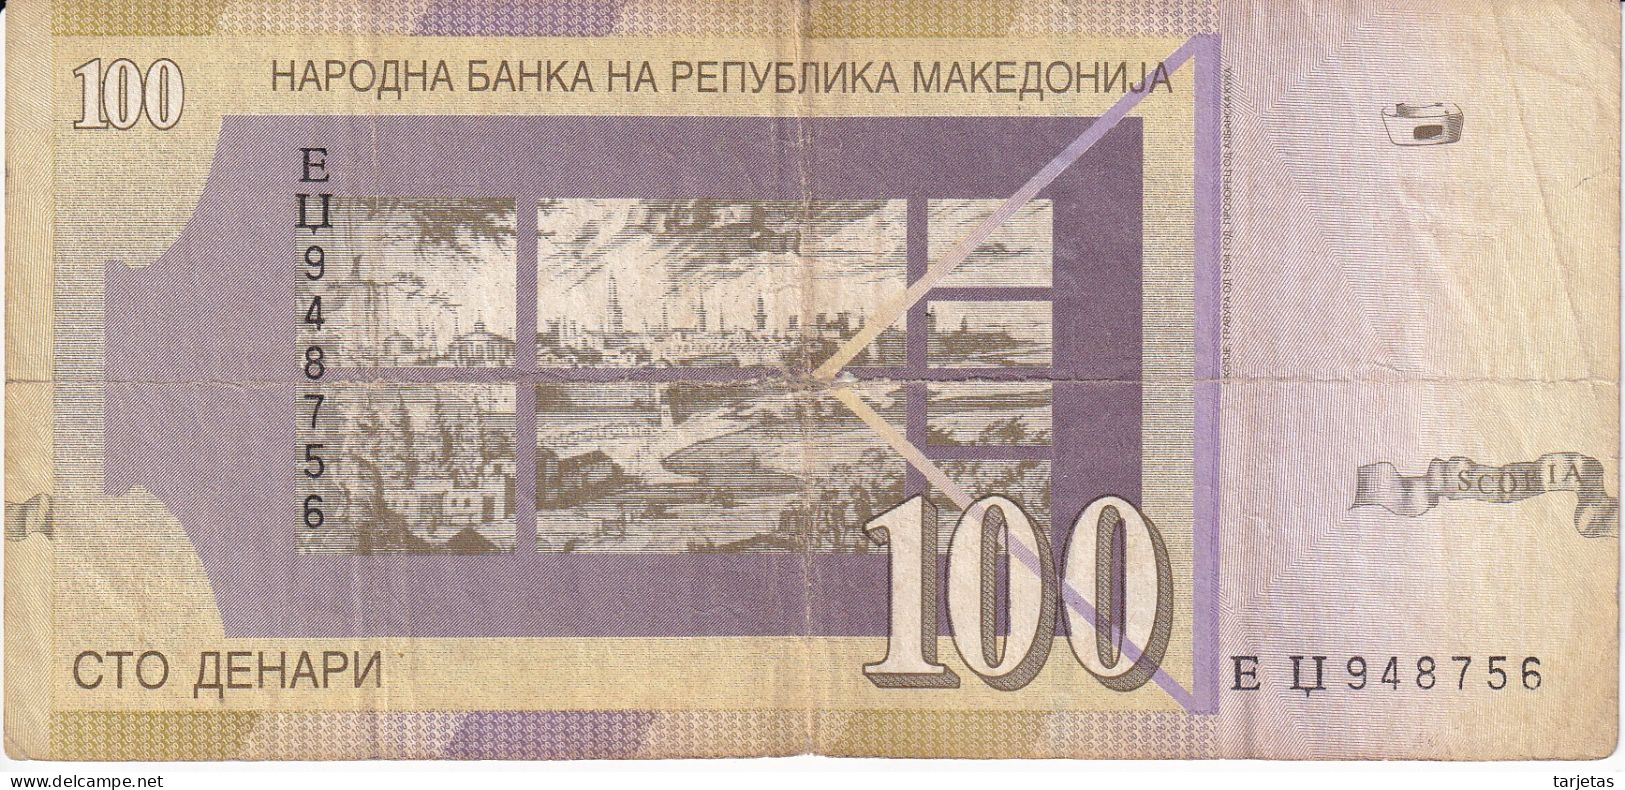 BILLETE DE MACEDONIA DE 100 DENARI DEL AÑO 2007 (BANKNOTE) - North Macedonia